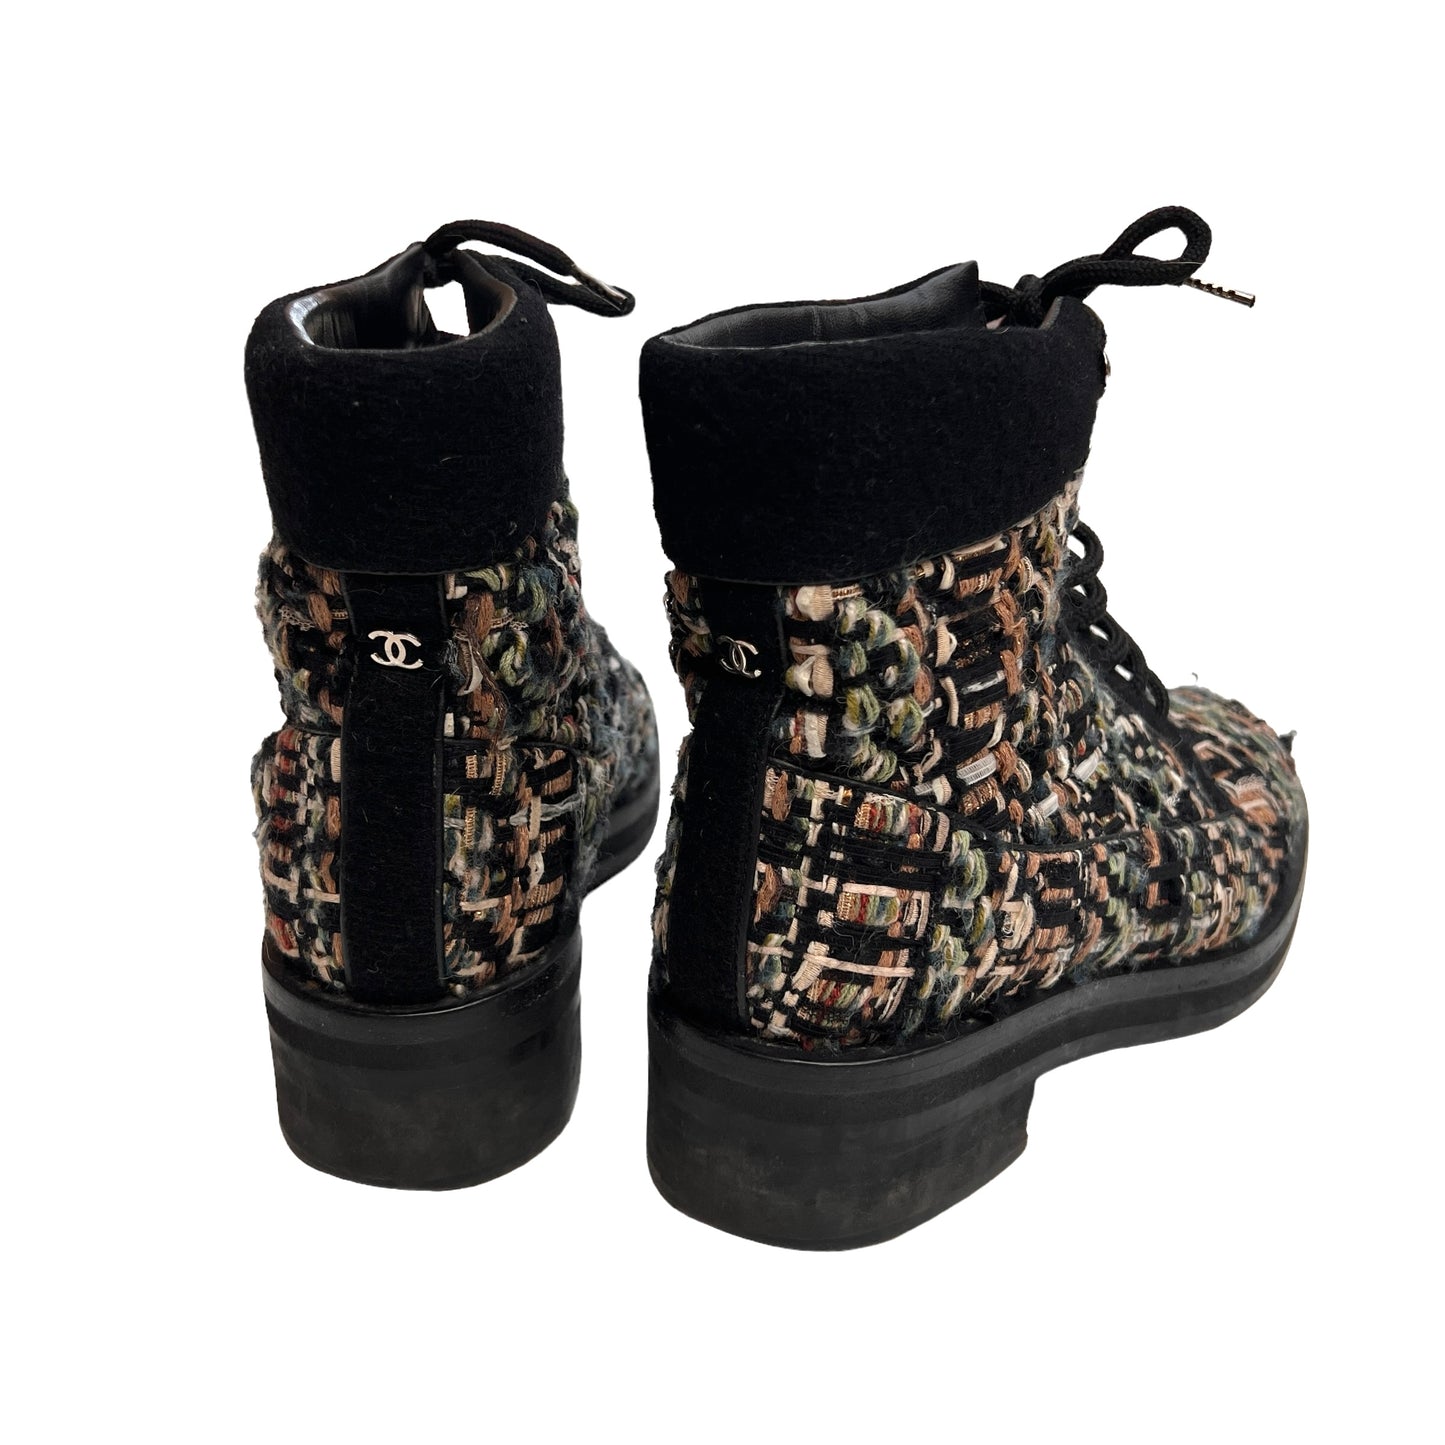 Black & Brown Tweed Boots - 7.5